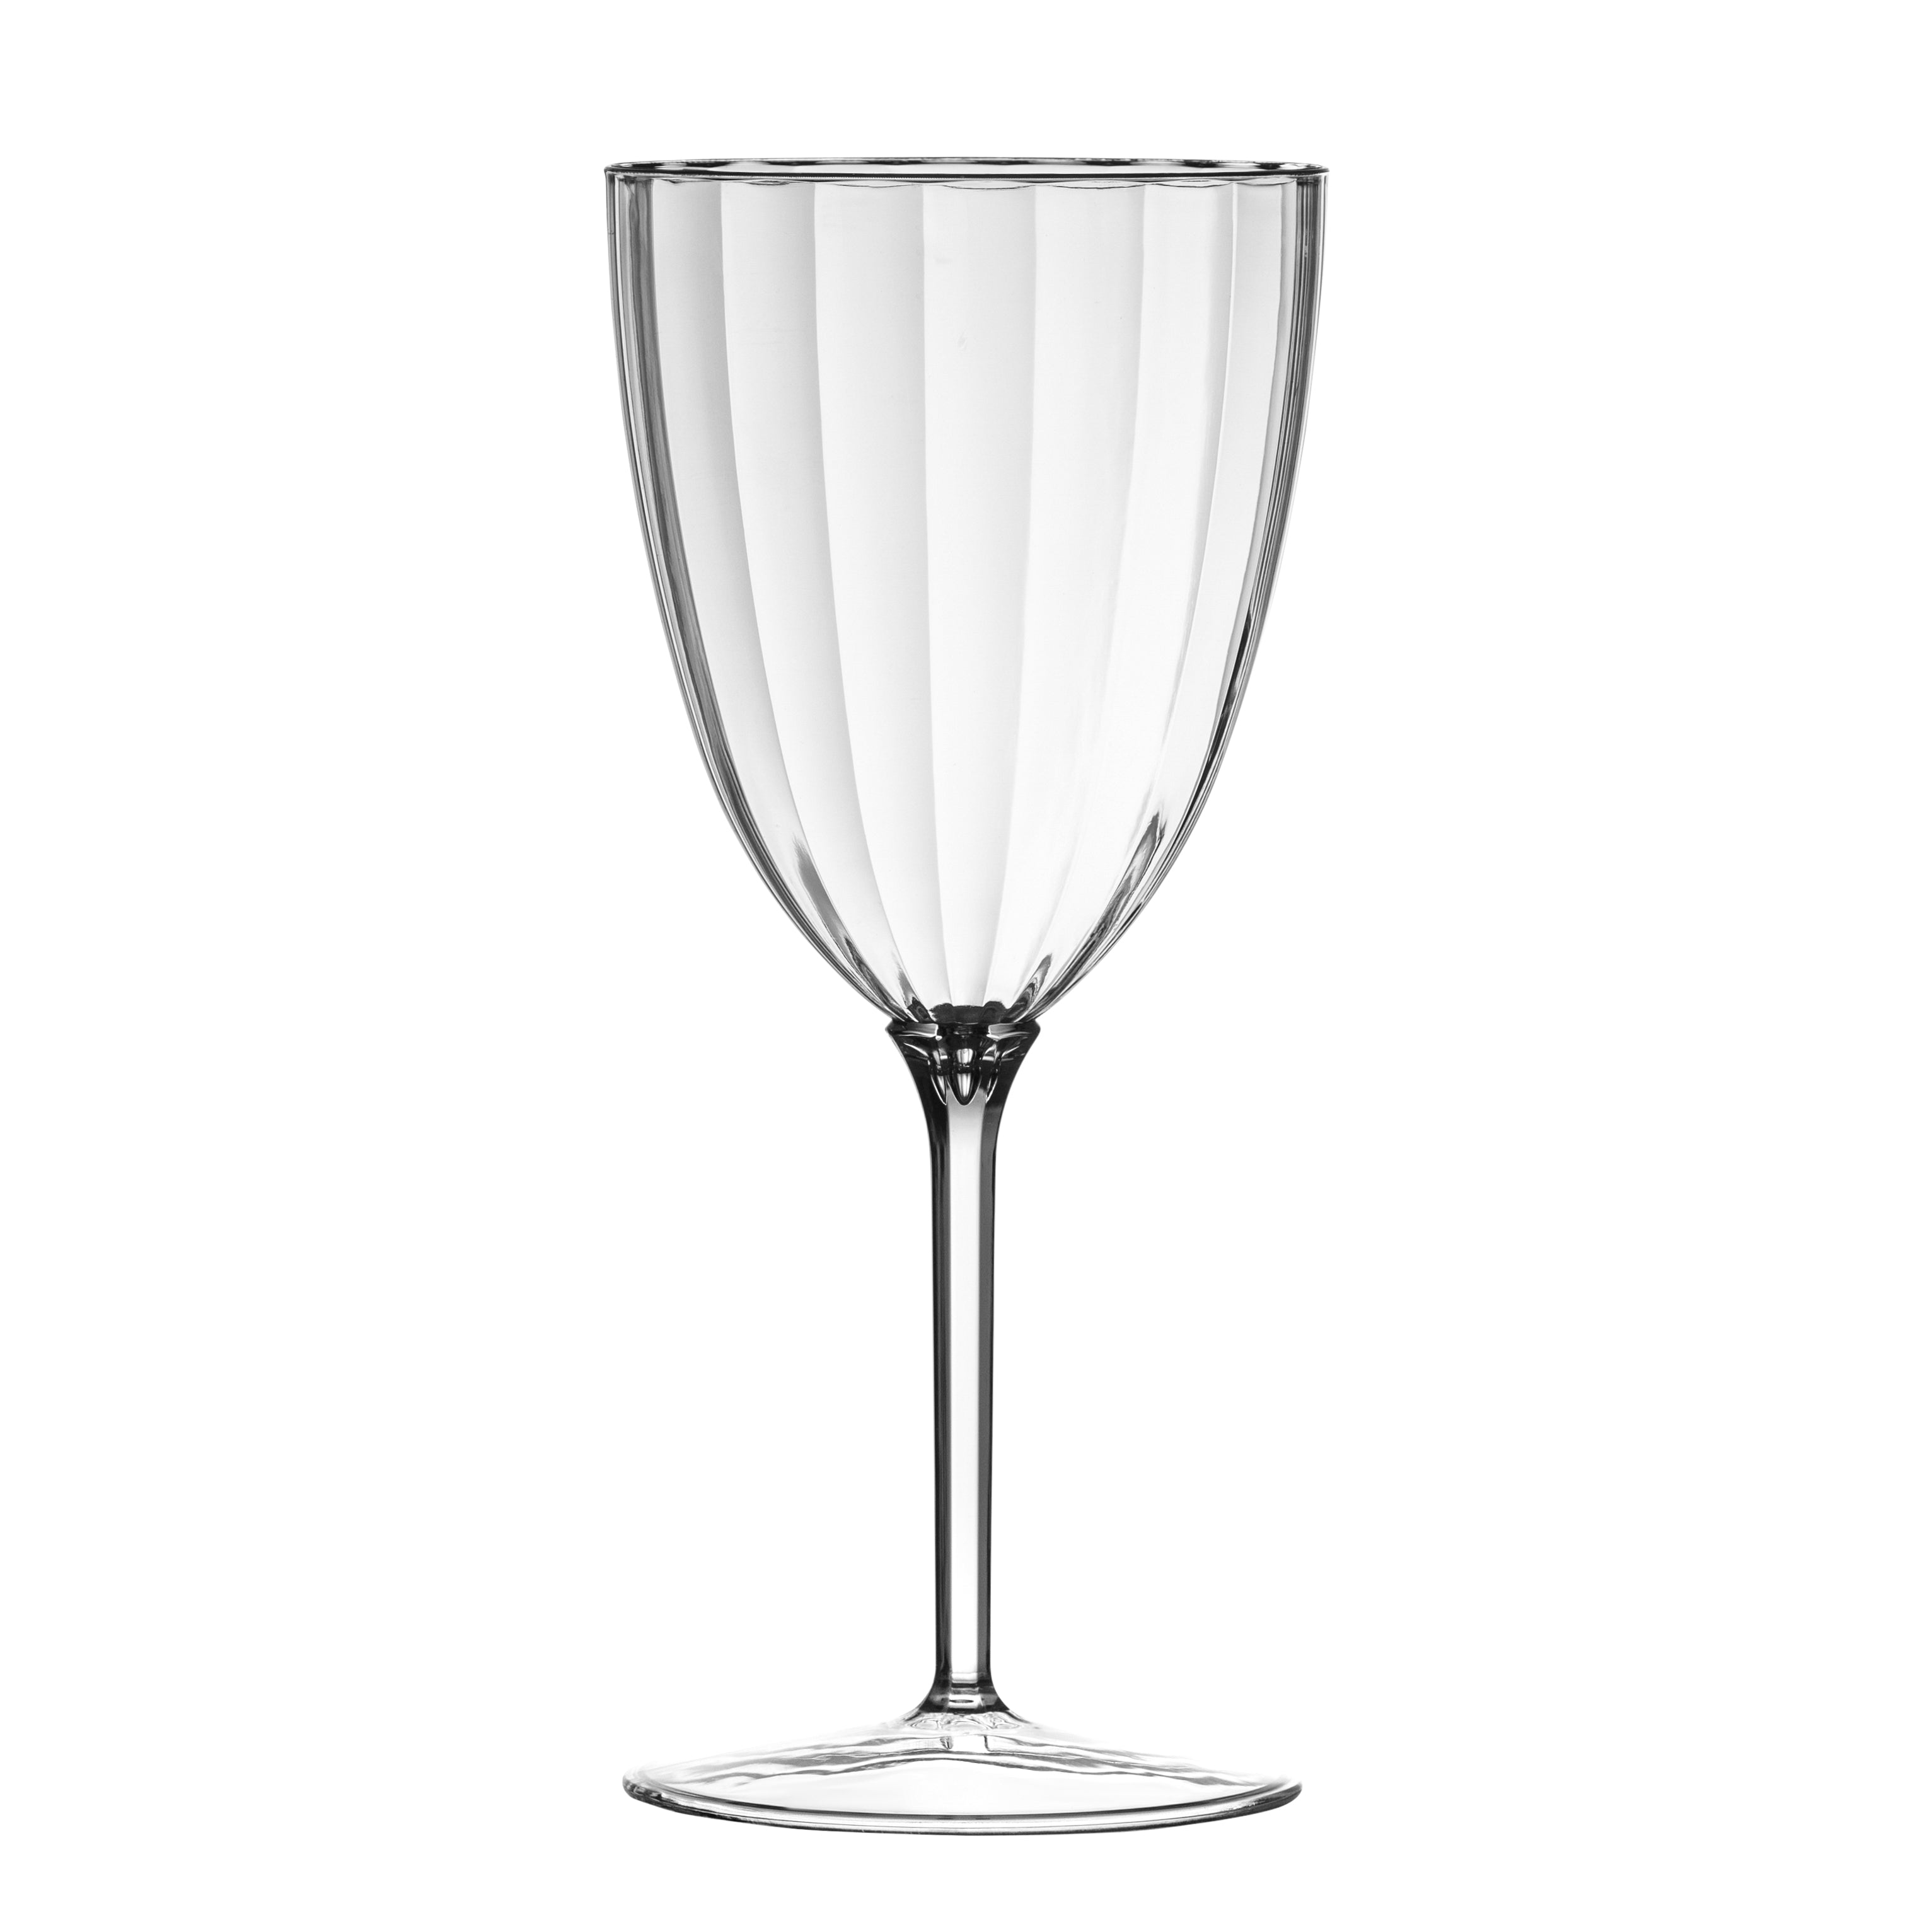 Galway Crystal Erne Wine Glasses (Set of 4), Transparent : : Home